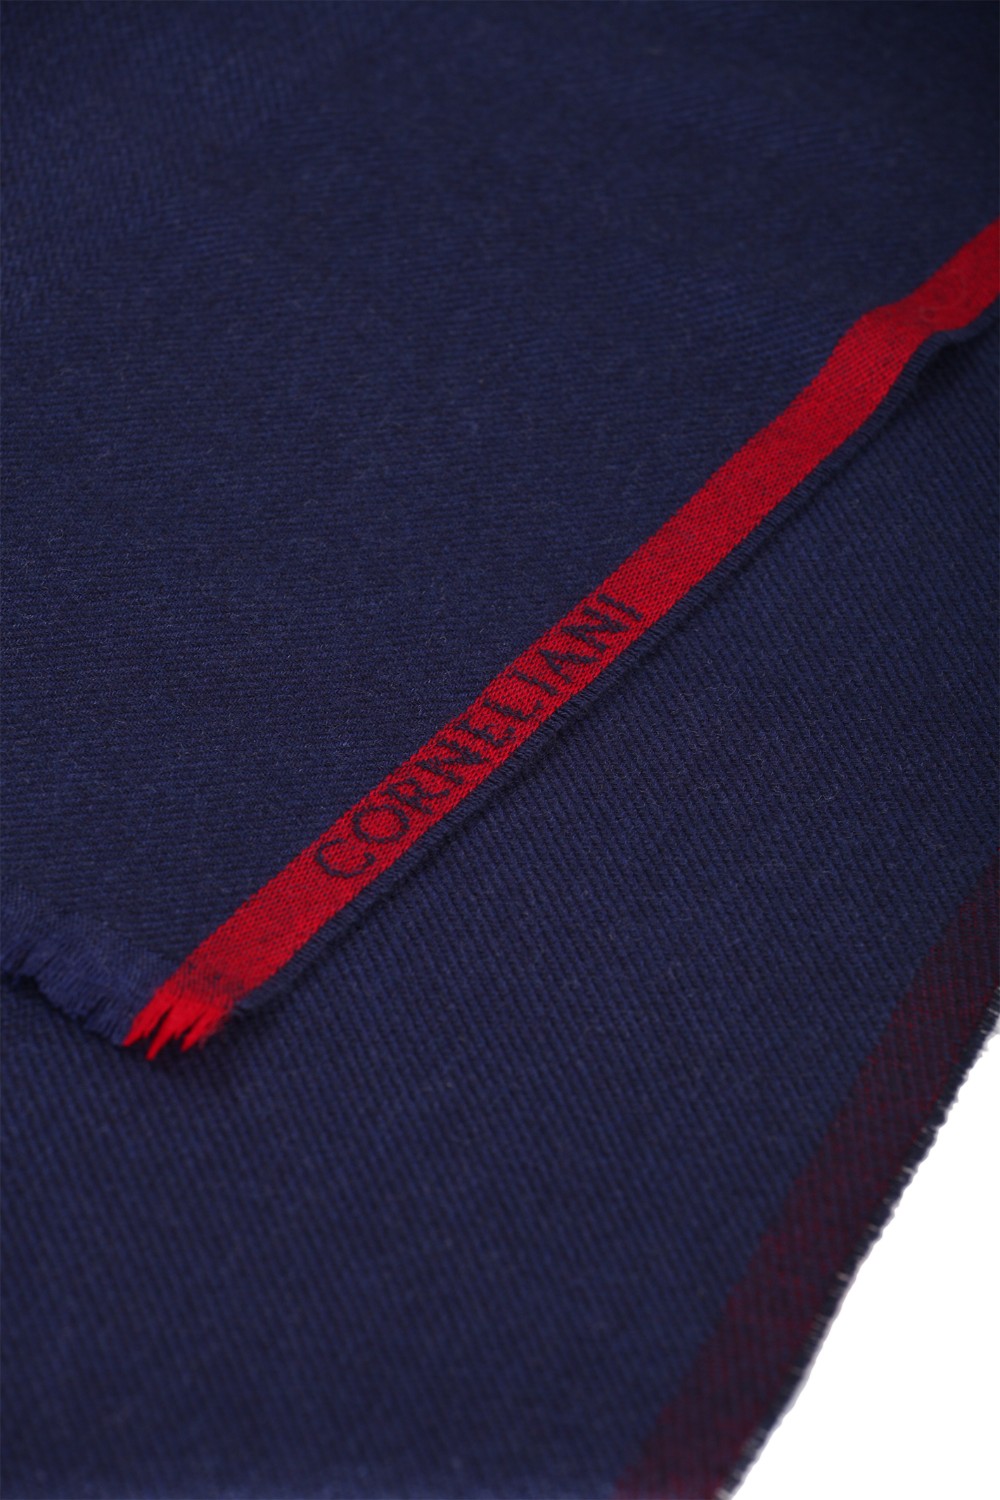 shop CORNELIANI  Sciarpa: Corneliani sciarpa blu in lana e cachemire.
Bordi sfrangiati.
Composizione: 80% lana 20% cachemire.
Dimensioni: 170 x 35 cm.
Made in Italy.. 86B389-0829015-001 number 1739887